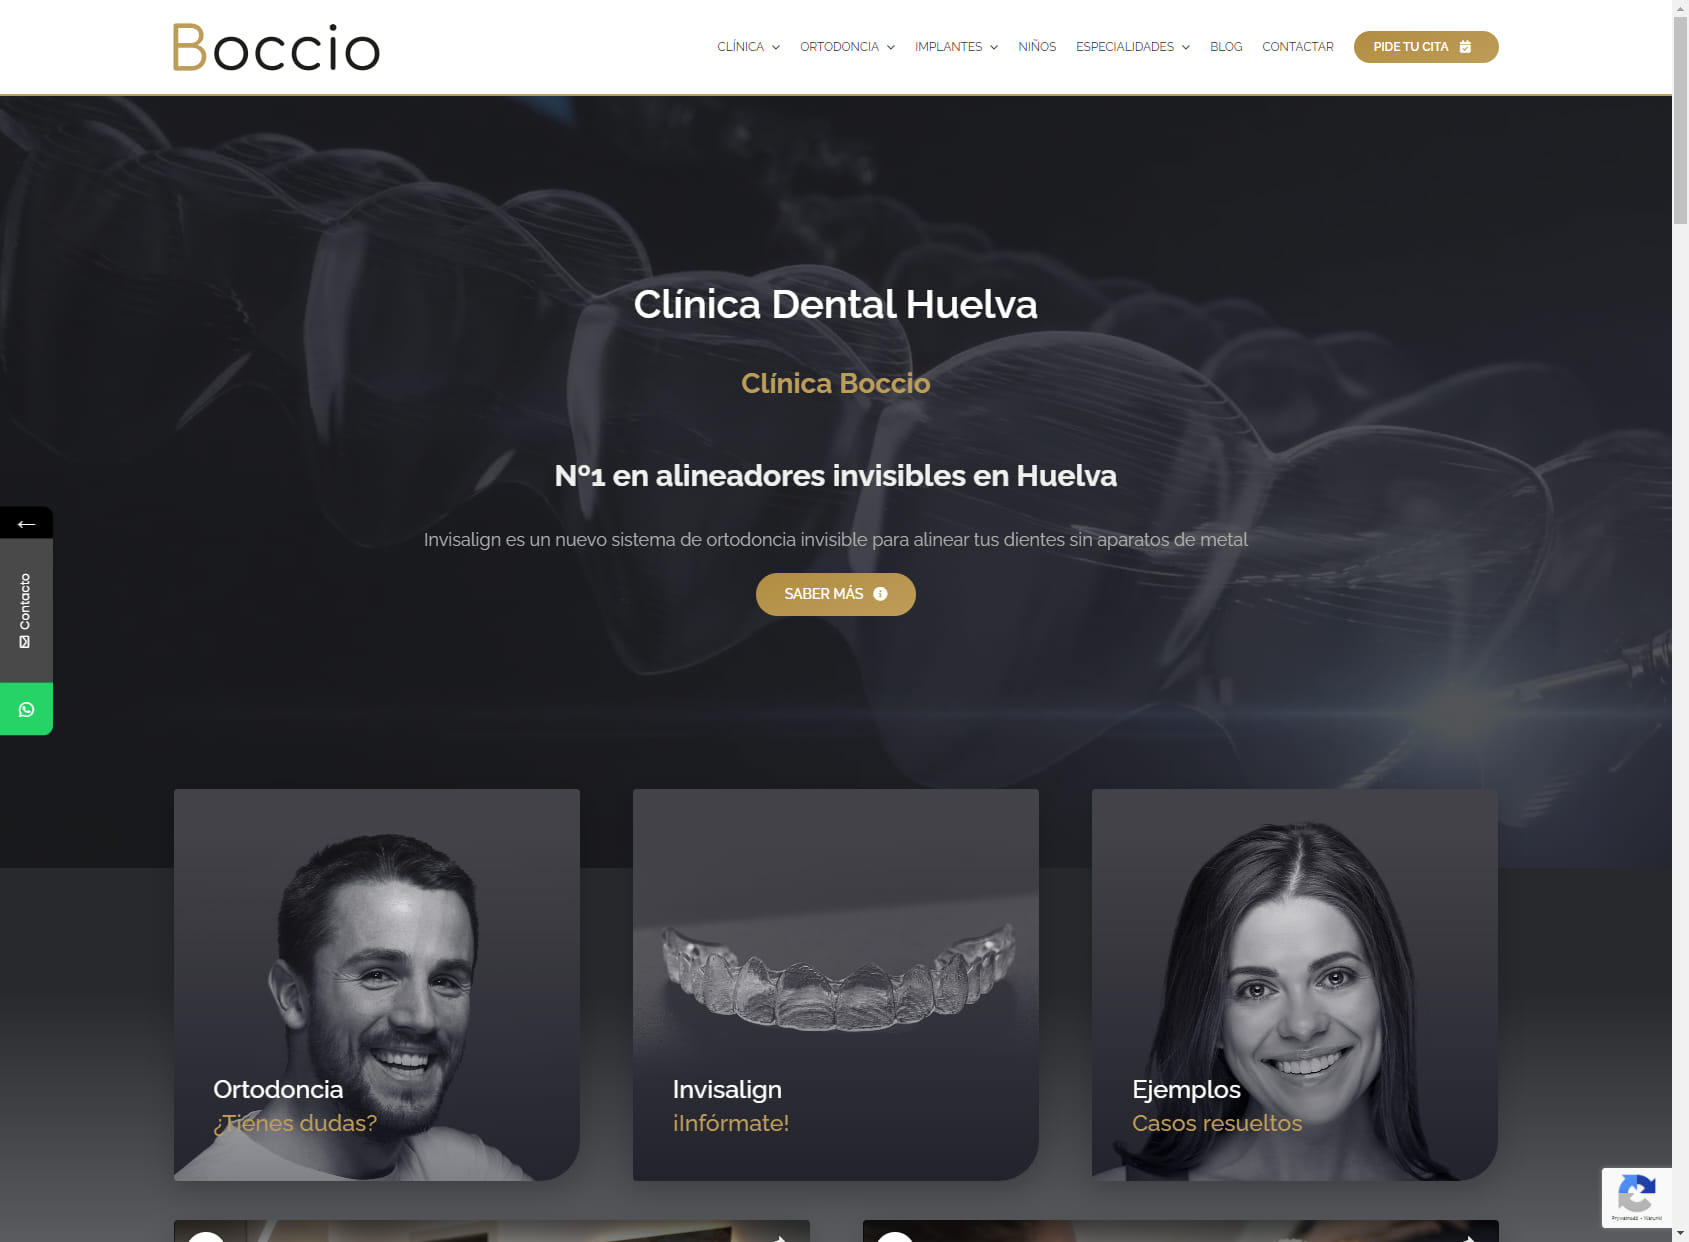 Orthodontic Clinic Fernando Boccio